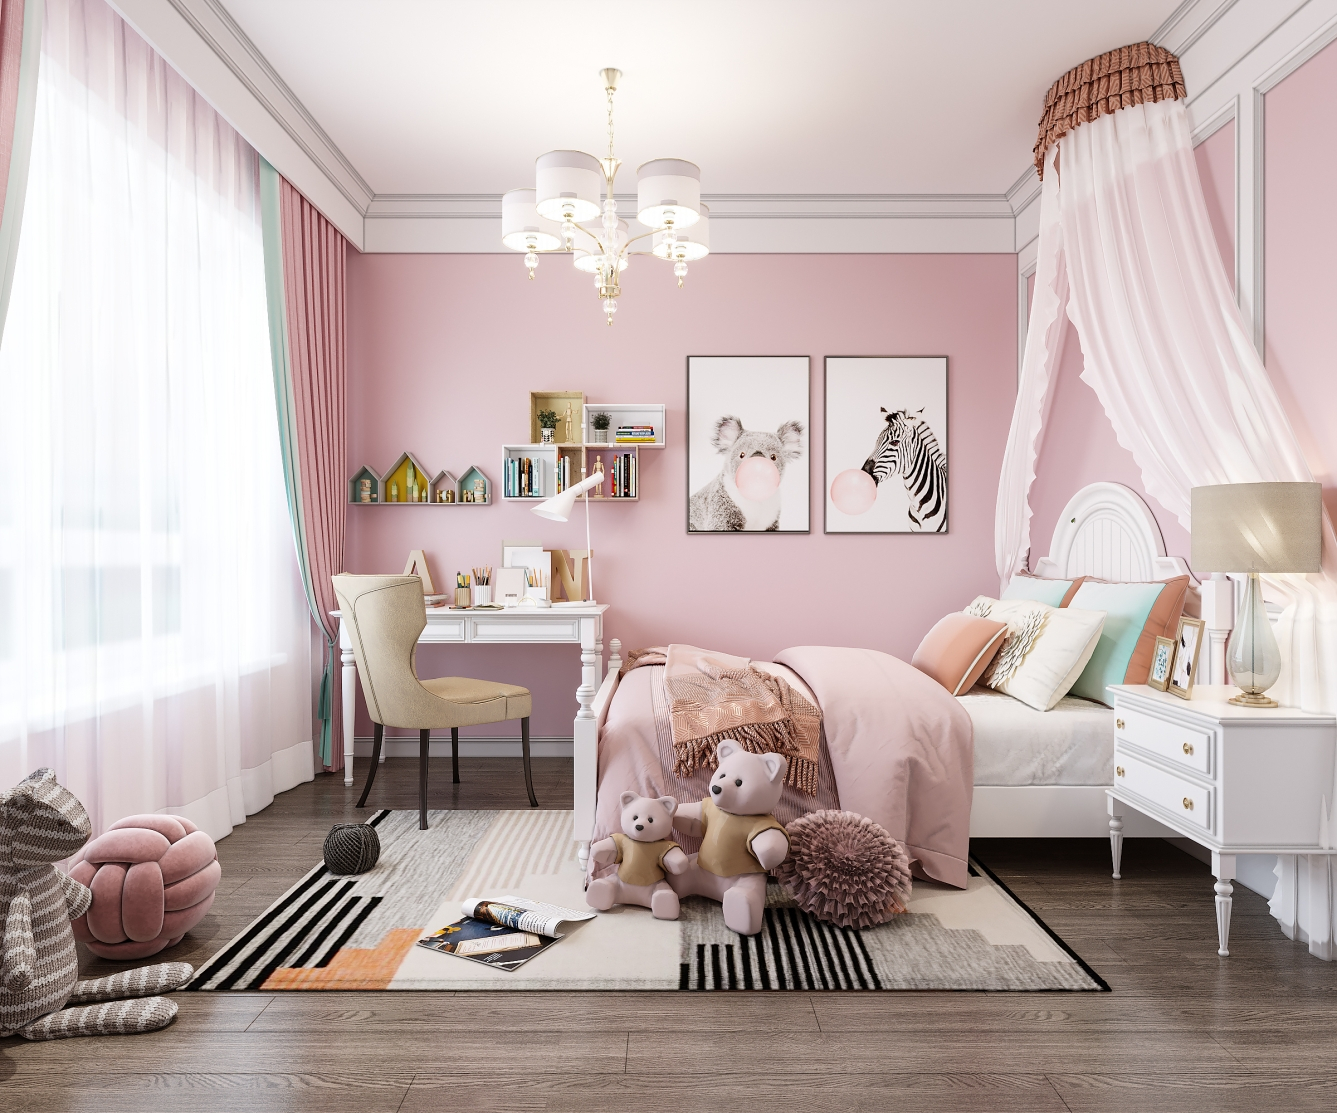 浅灰色的木地板粉色的背景墙及墙漆搭配彩色点缀增添空间的童真童趣